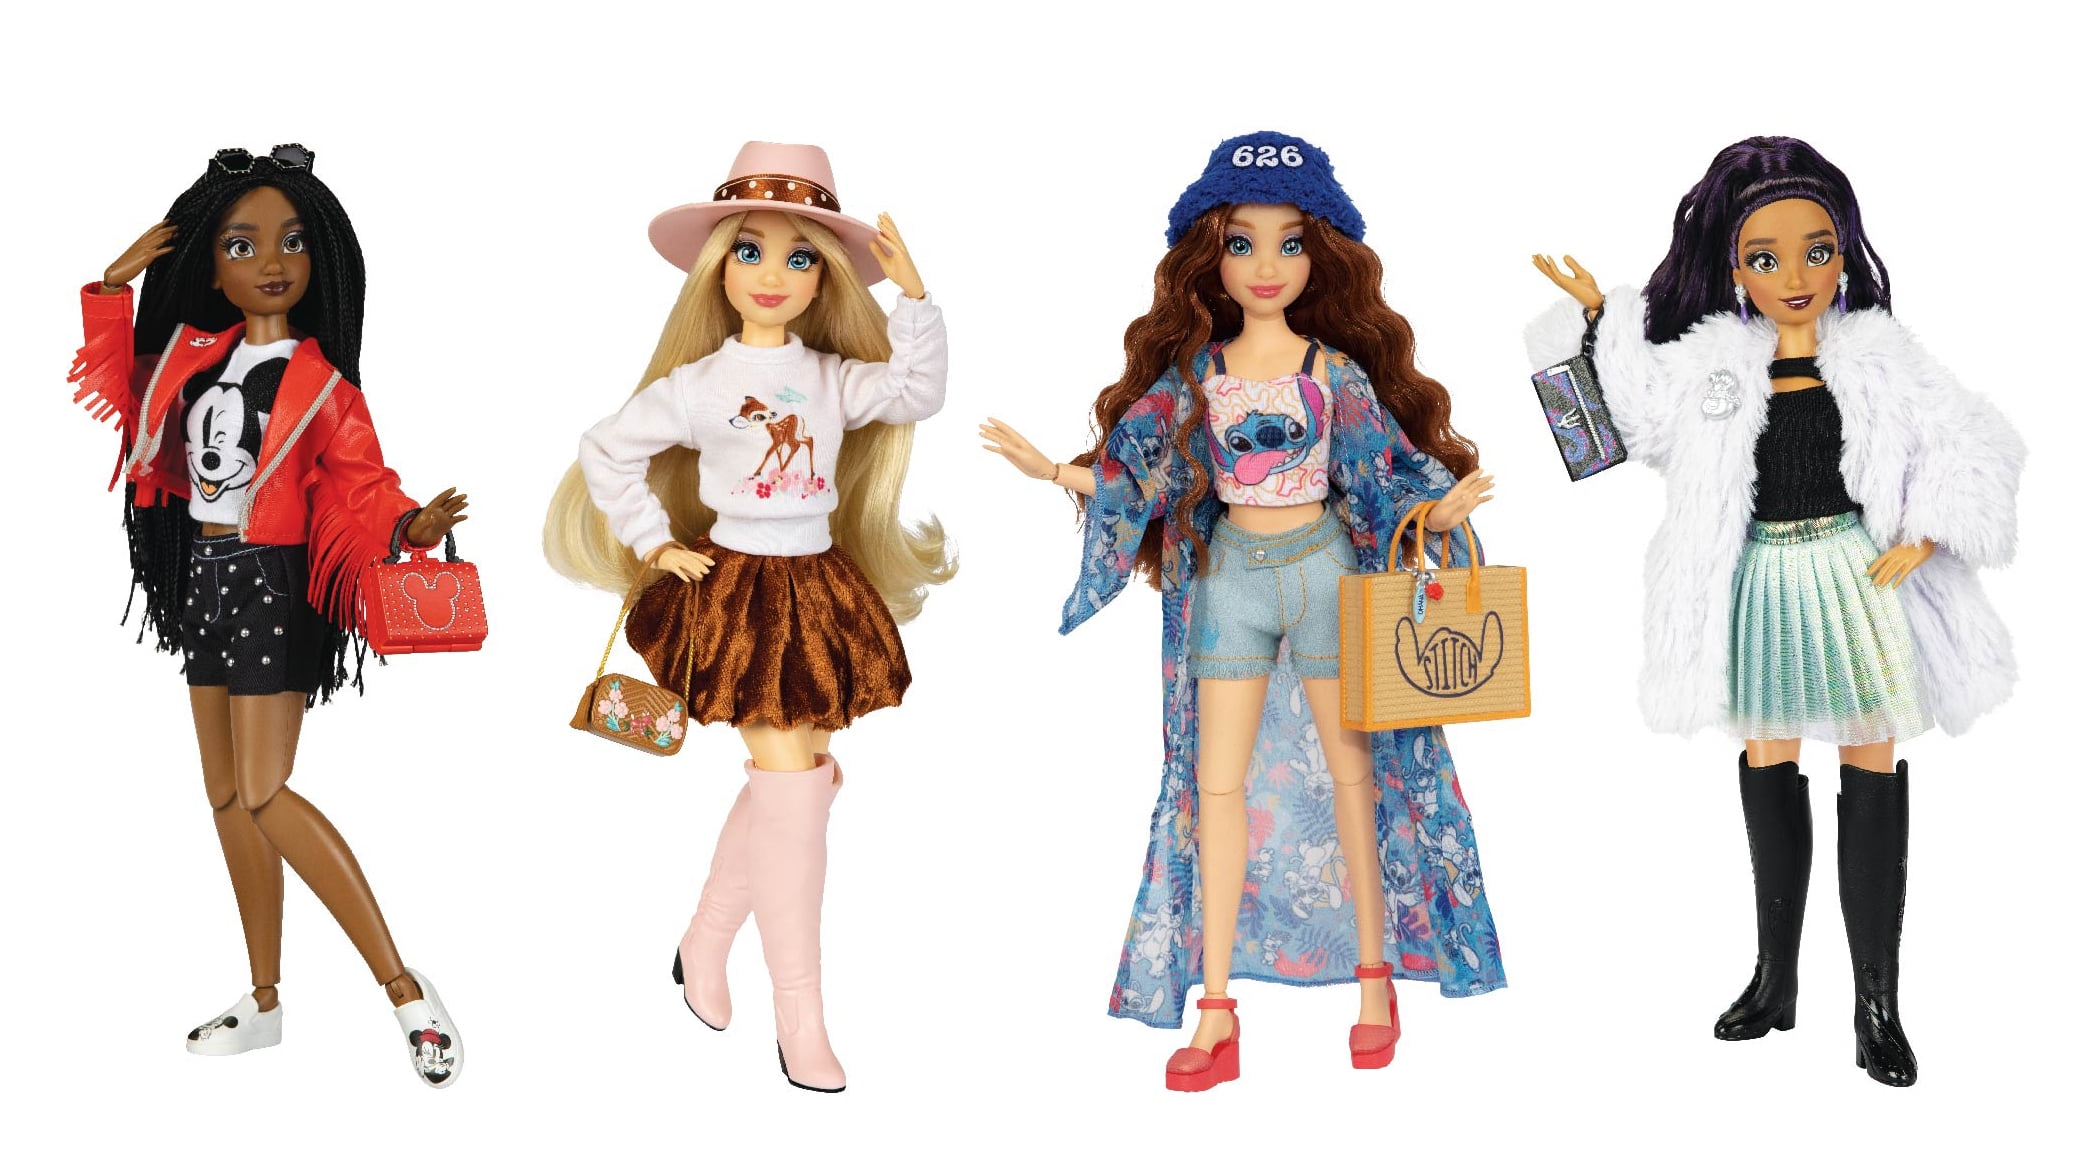 Disney Ily 4ever Fashion Dolls, Blue, Stitch